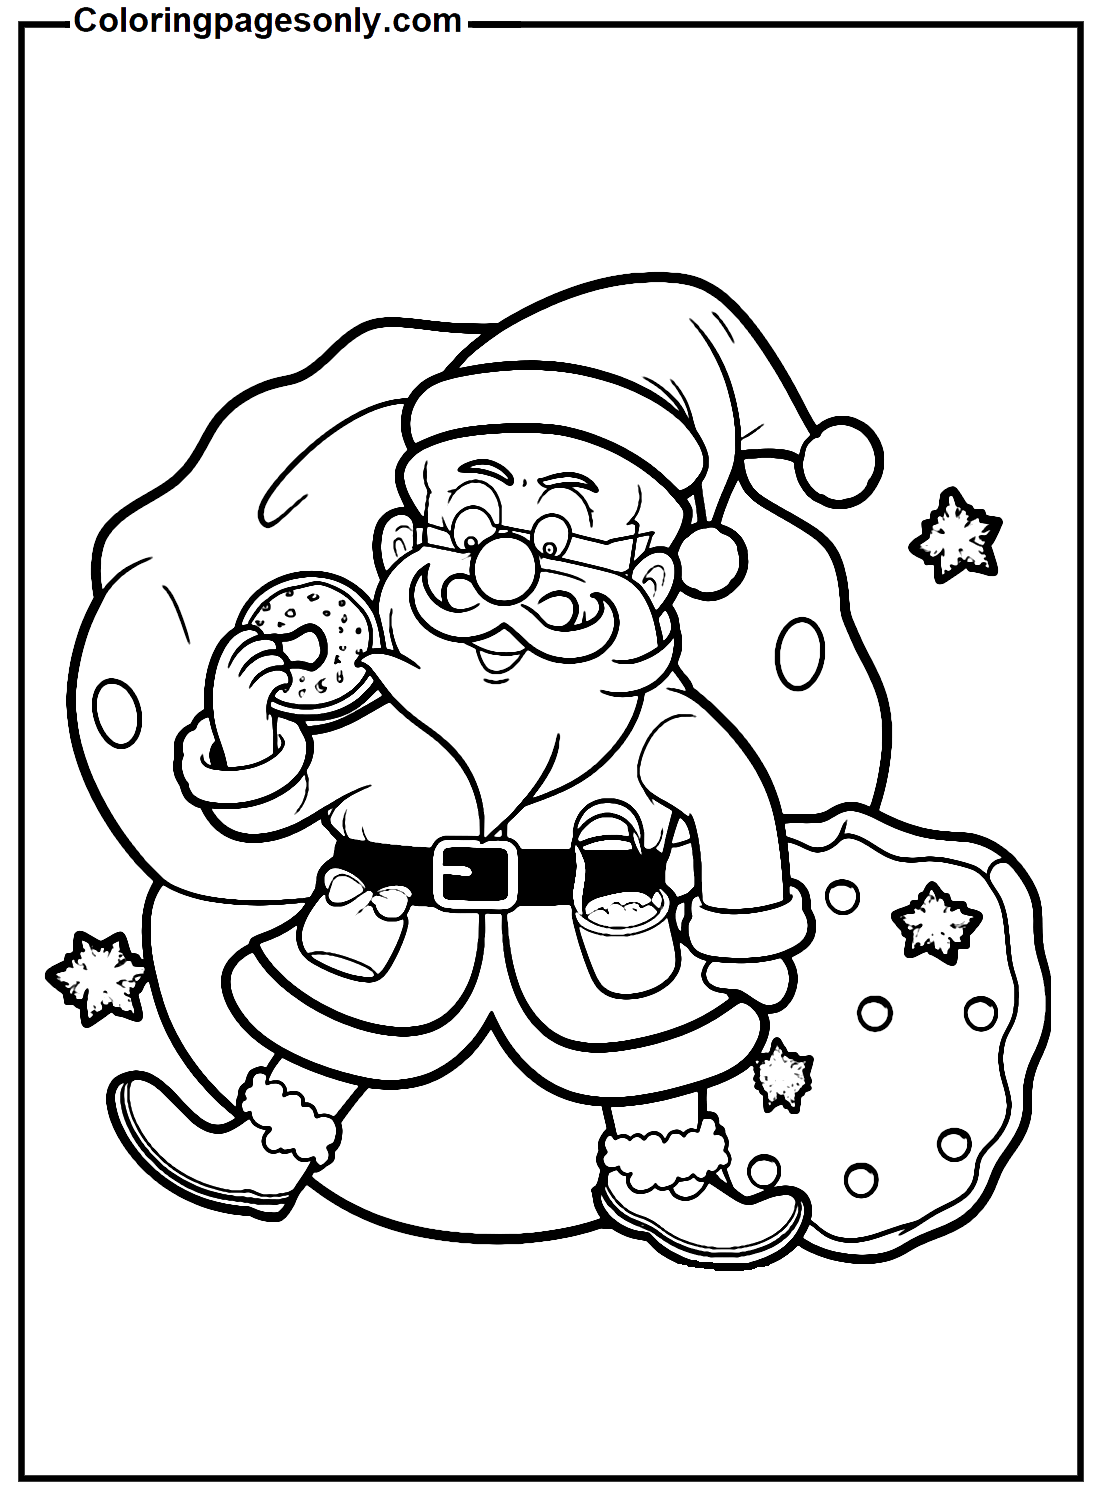 Der Weihnachtsmann isst Kekse von Cookie